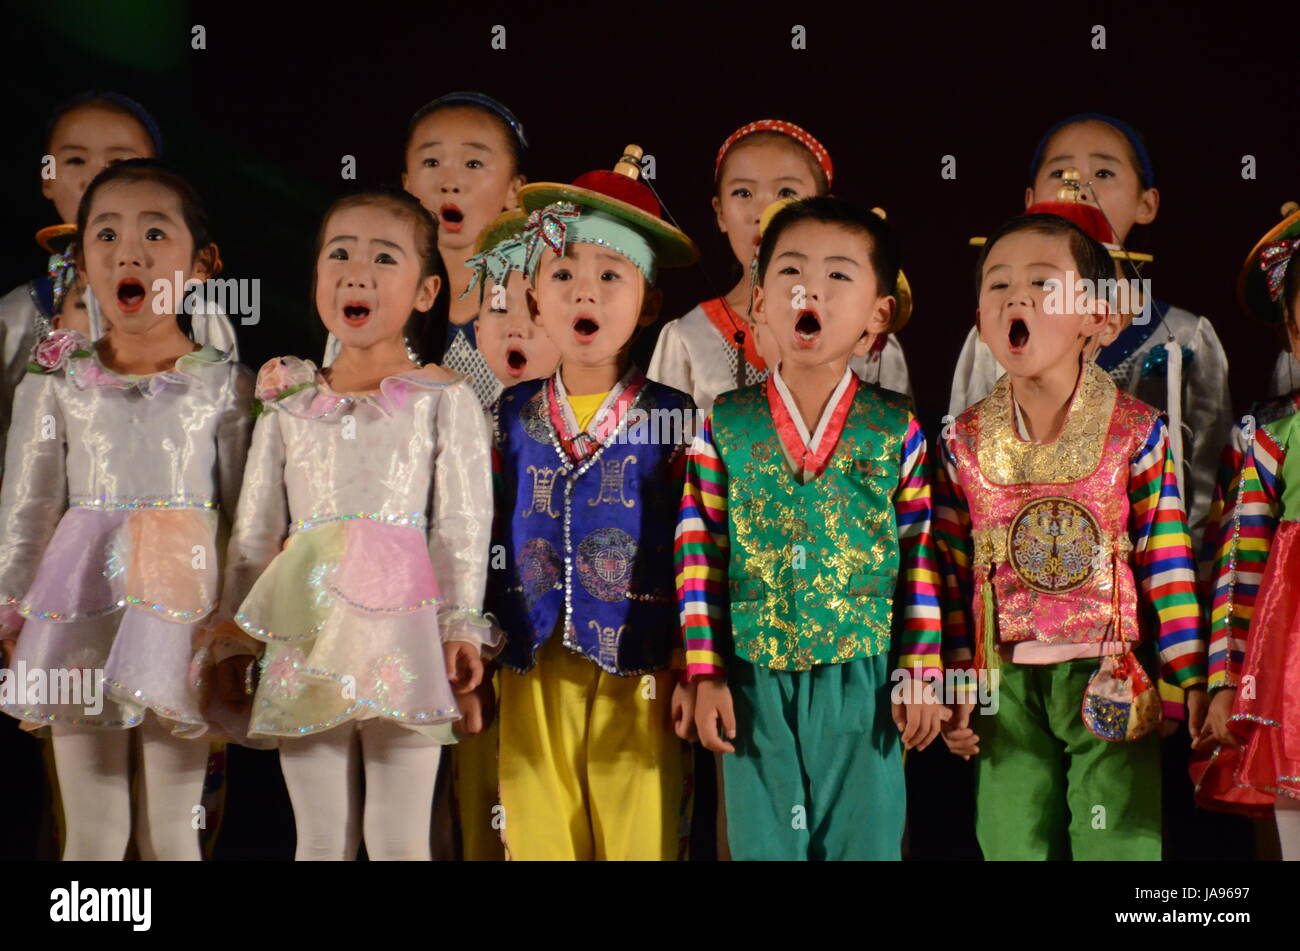 La Corée du Nord les enfants jouer de la musique et de la danse dans la ville de Rason. Saluant les chansons 'grande' et 'cher Leaders' Kim Il Sung et Kim Jong-il. Banque D'Images